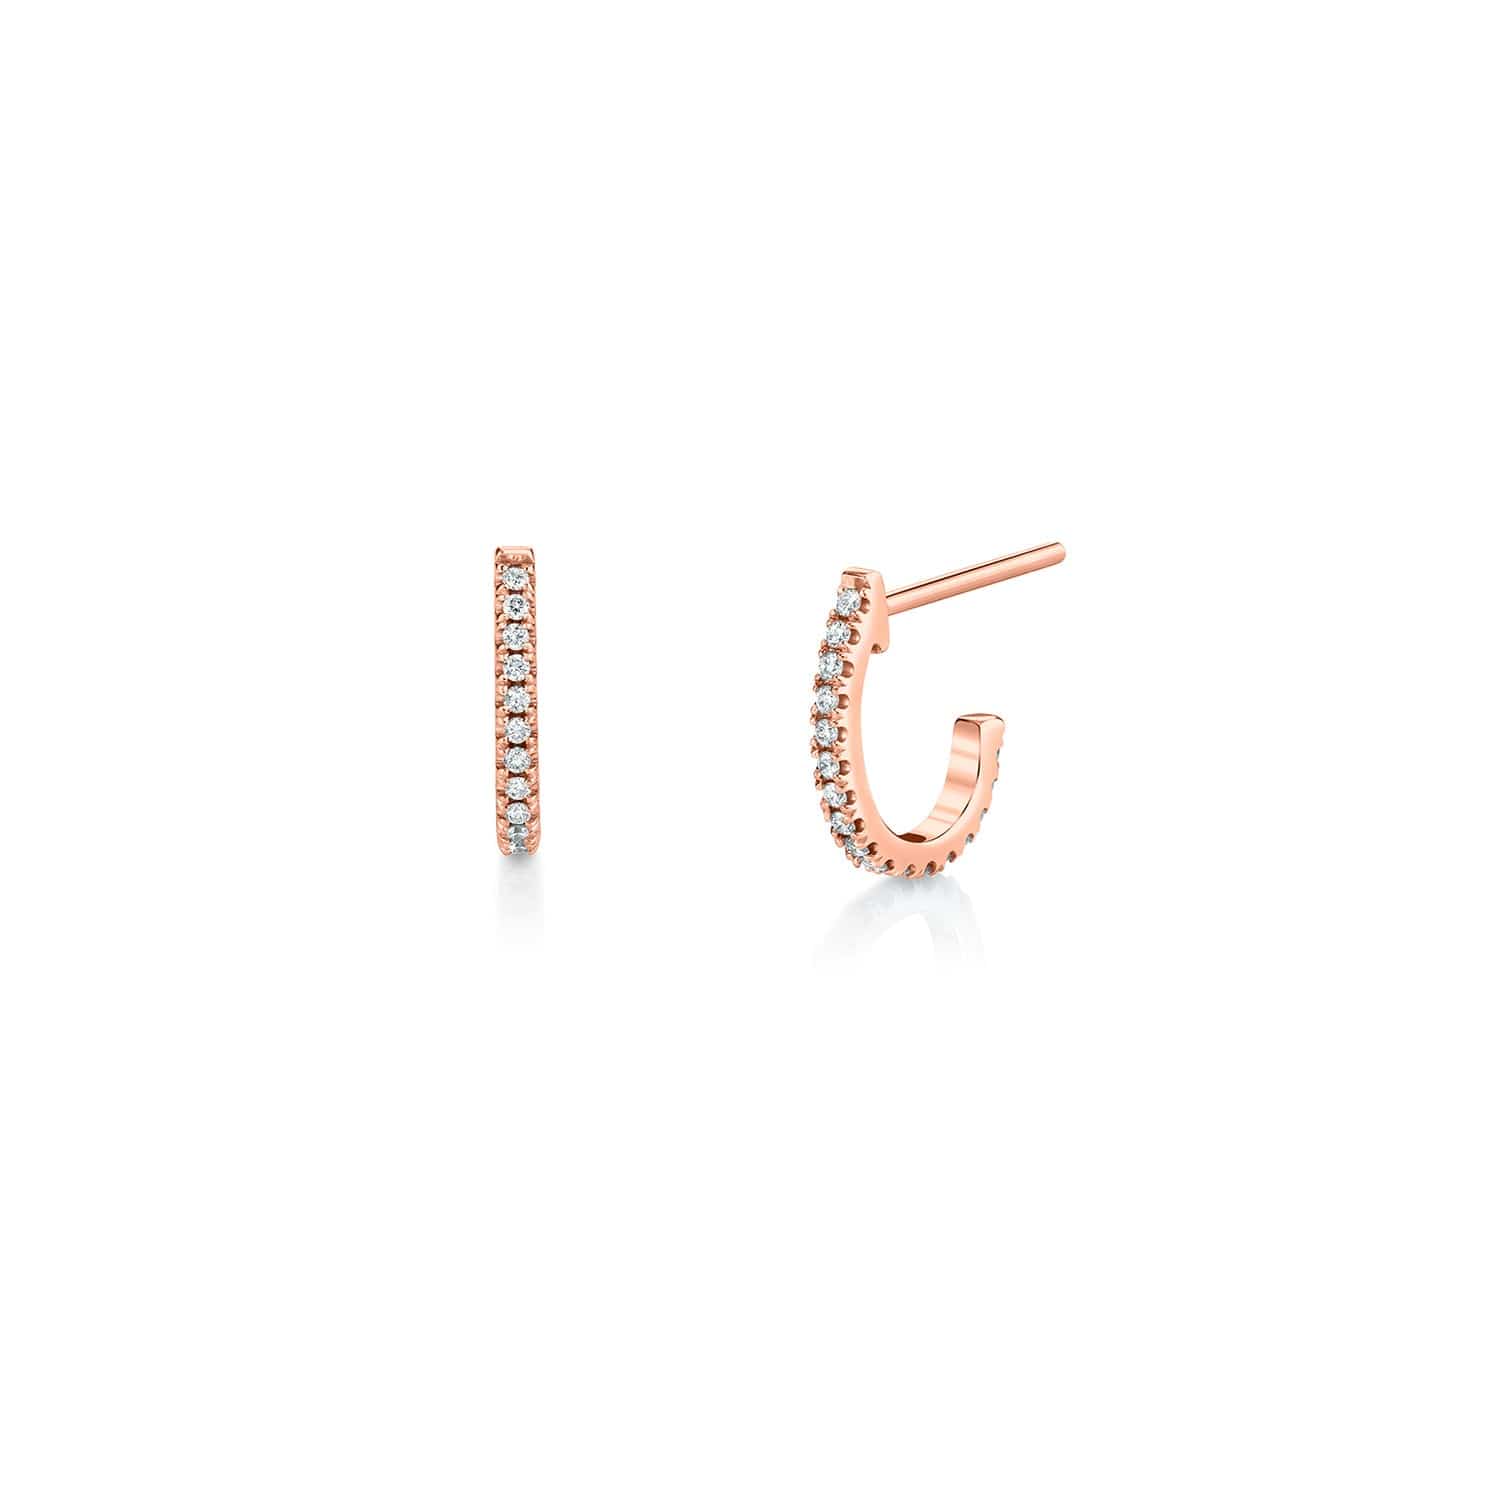 MICHAEL M Earrings 14K Rose Gold Diamond Huggie Hoop Earrings ER270RG